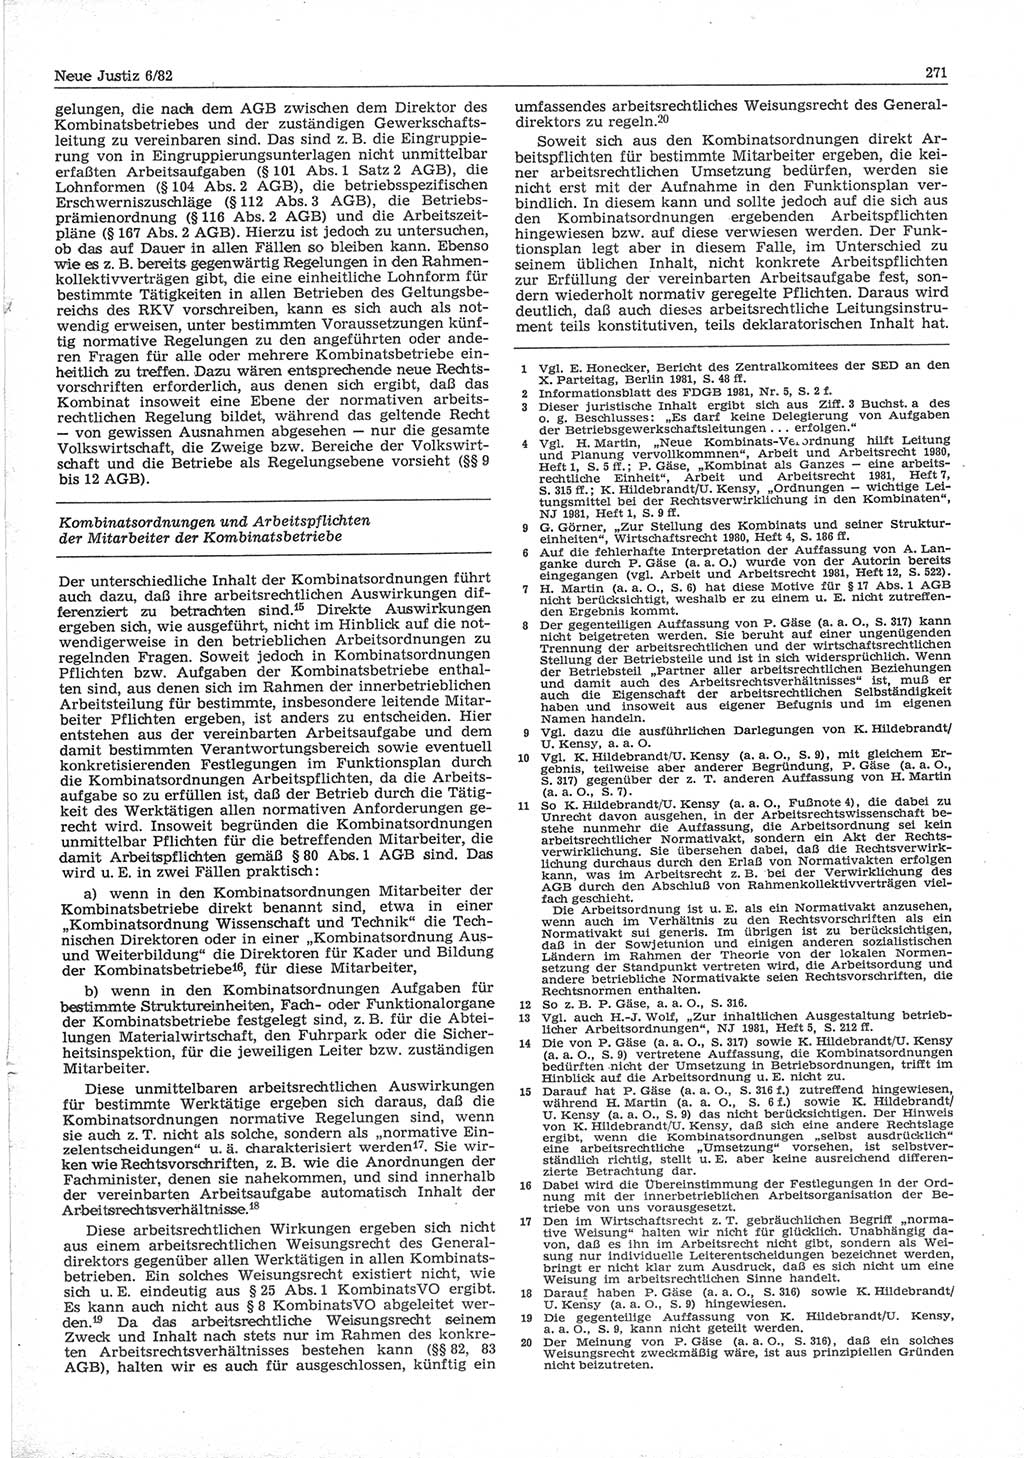 Neue Justiz (NJ), Zeitschrift für sozialistisches Recht und Gesetzlichkeit [Deutsche Demokratische Republik (DDR)], 36. Jahrgang 1982, Seite 271 (NJ DDR 1982, S. 271)